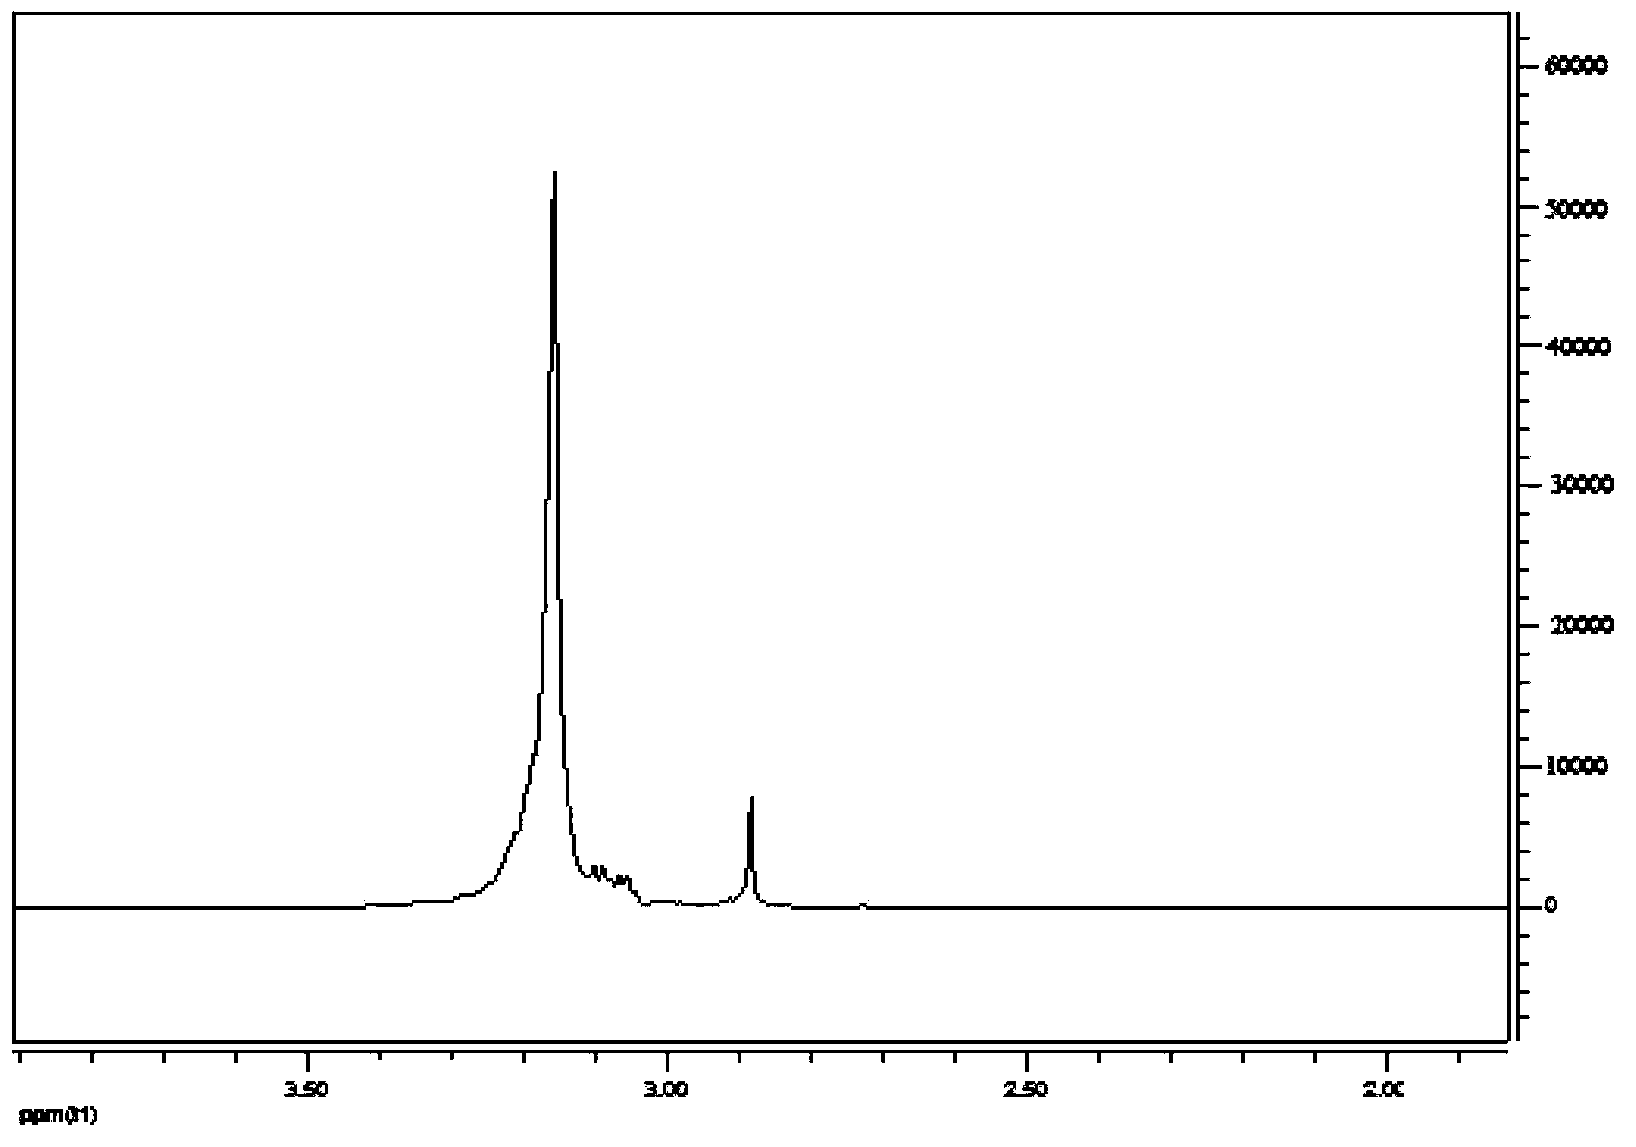 Rosinyl polyoxyethylene amine type gemini surfactant and preparation method thereof